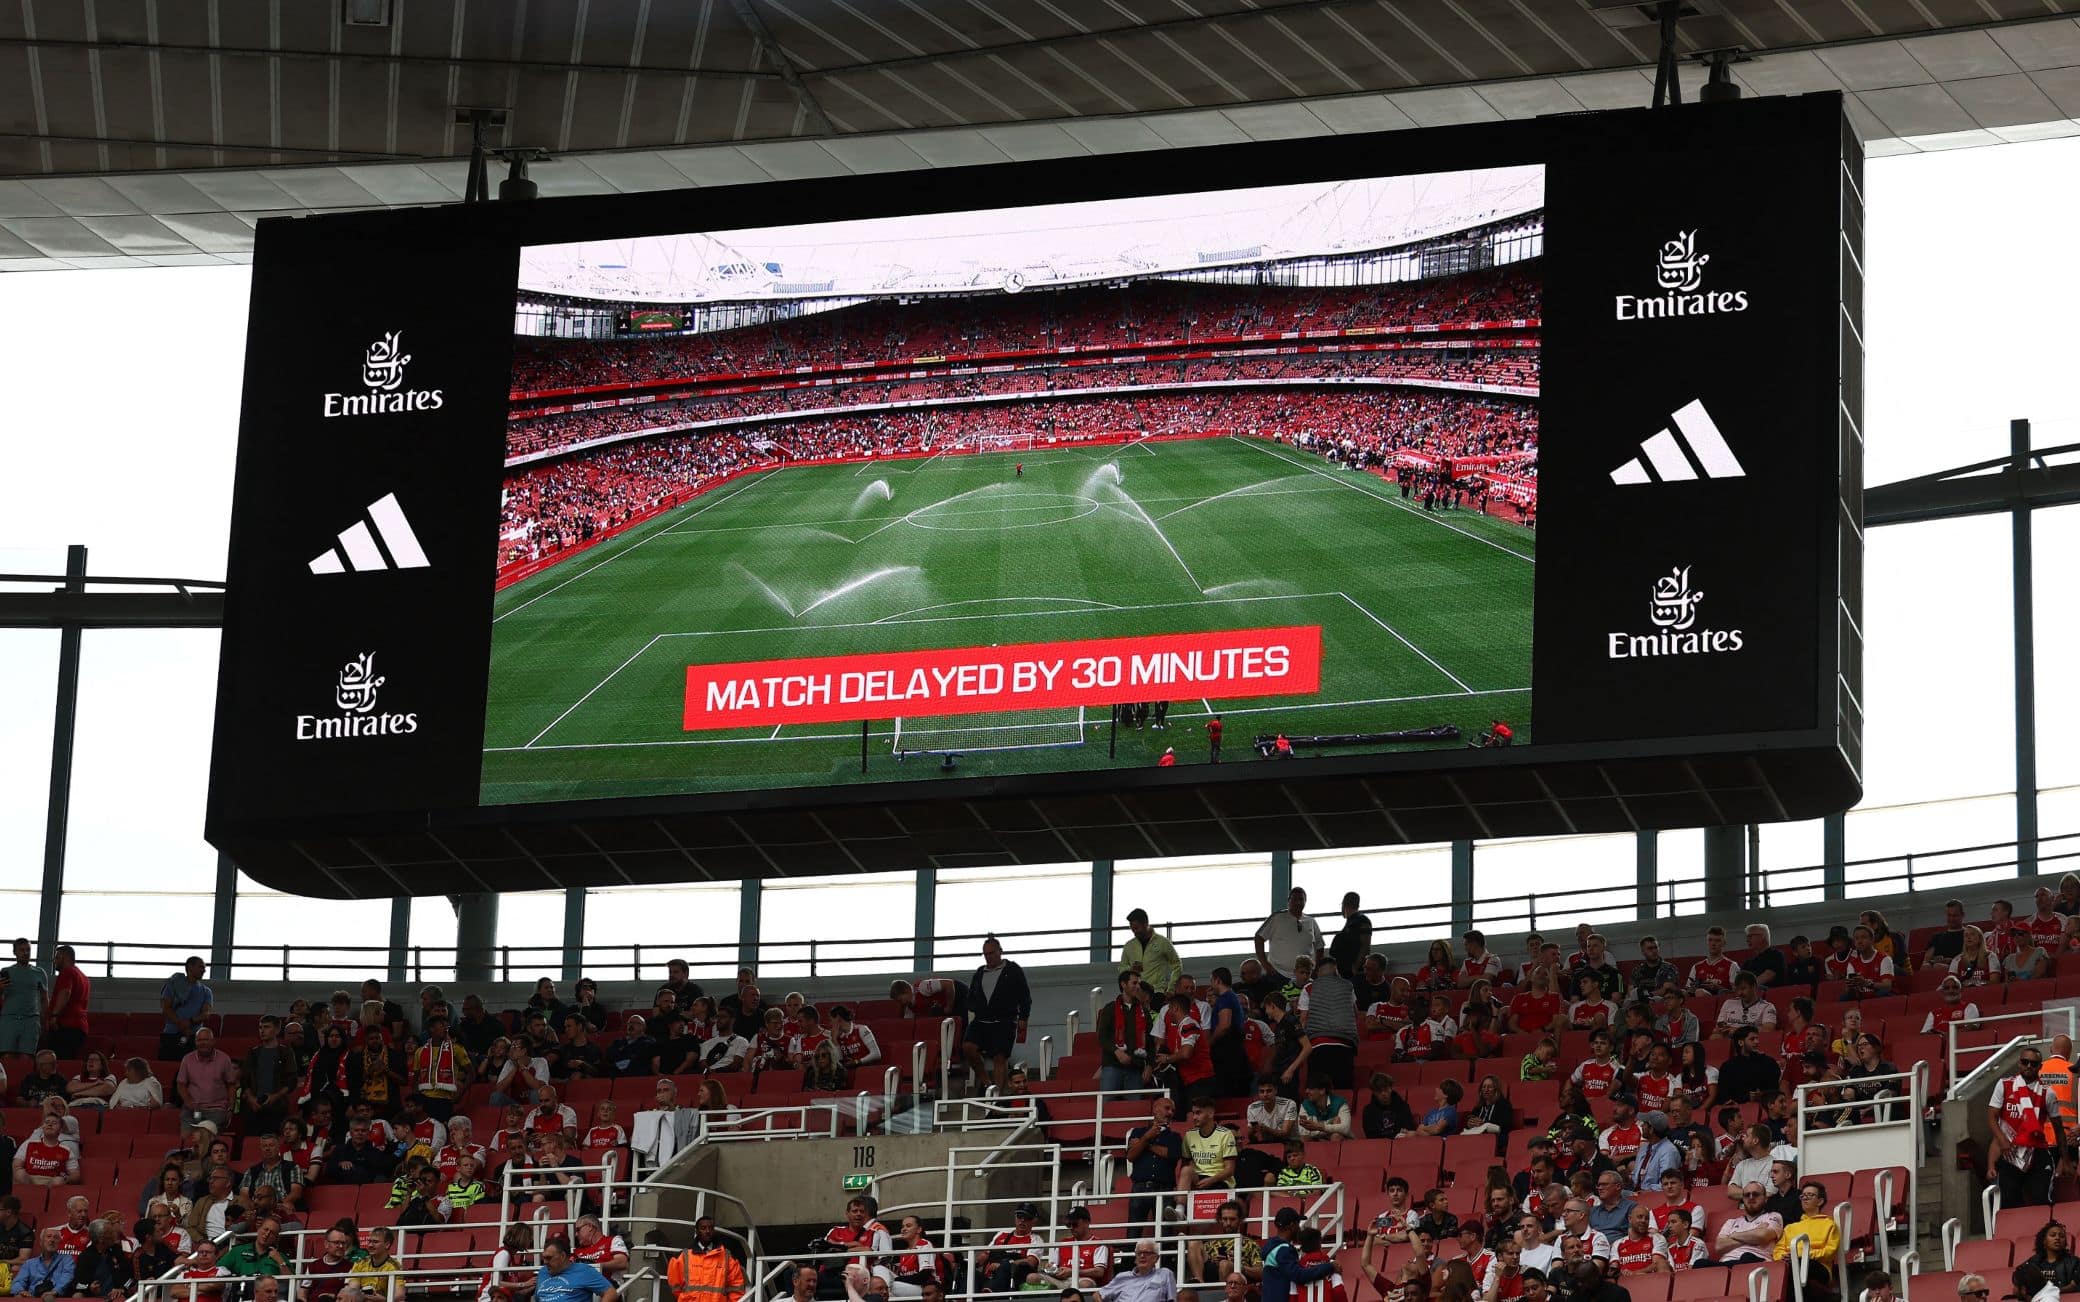 Arsenal-Forest slitta di 30', l'annuncio sul maxischermo